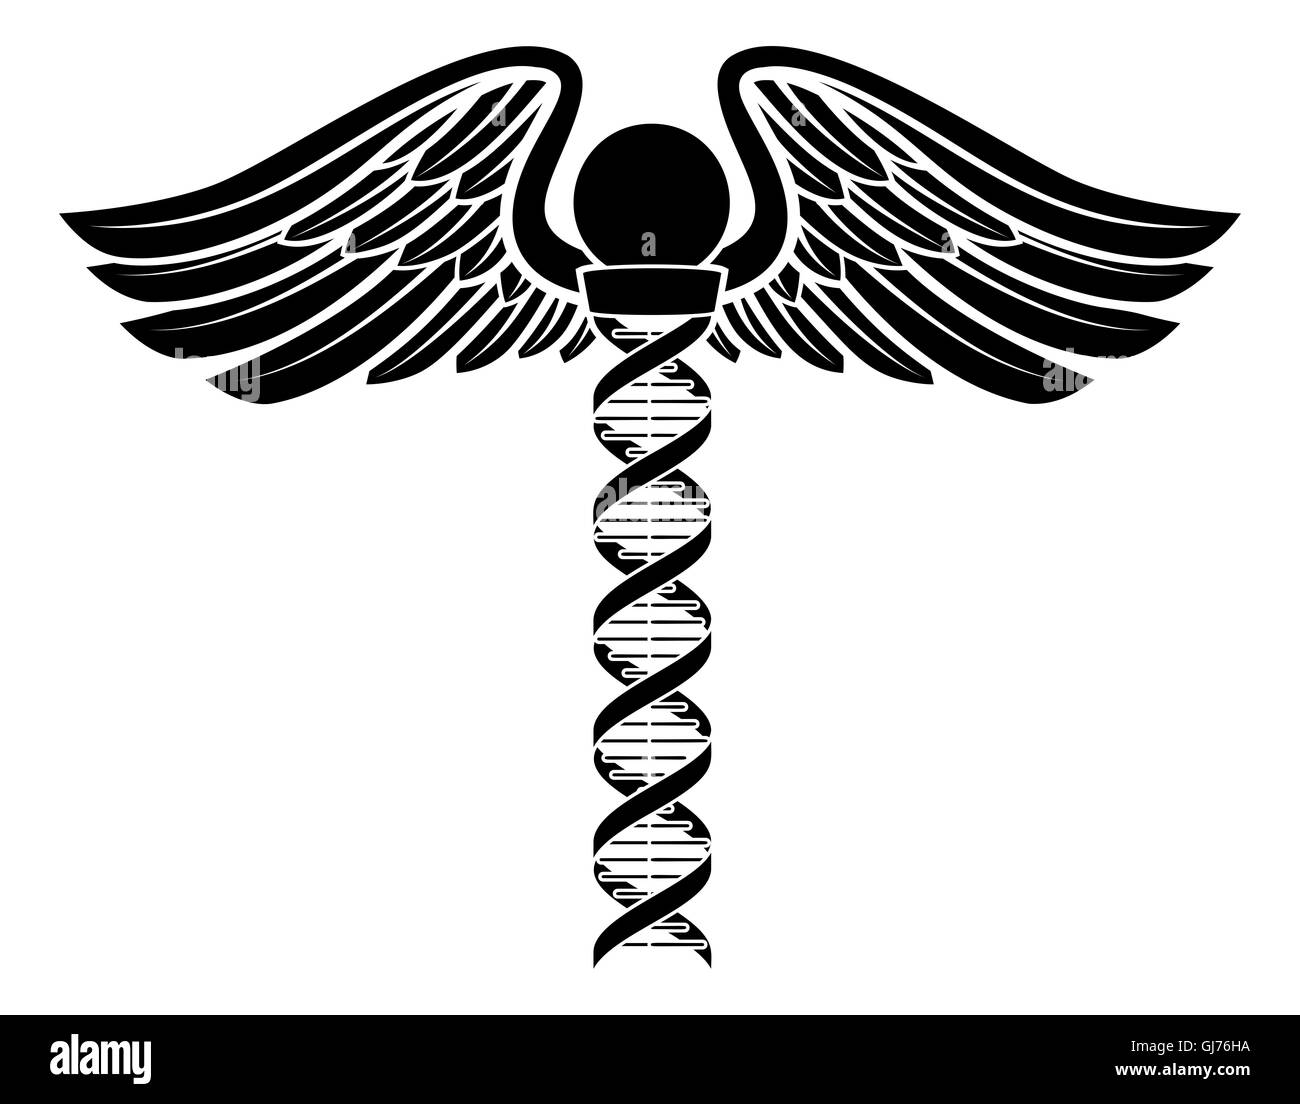 Hermesstab medizinischen Symbol mit einem menschlichen DNA-Doppelhelix genetische Chromosom Strang, aus denen die zentralen Stab. Stockfoto